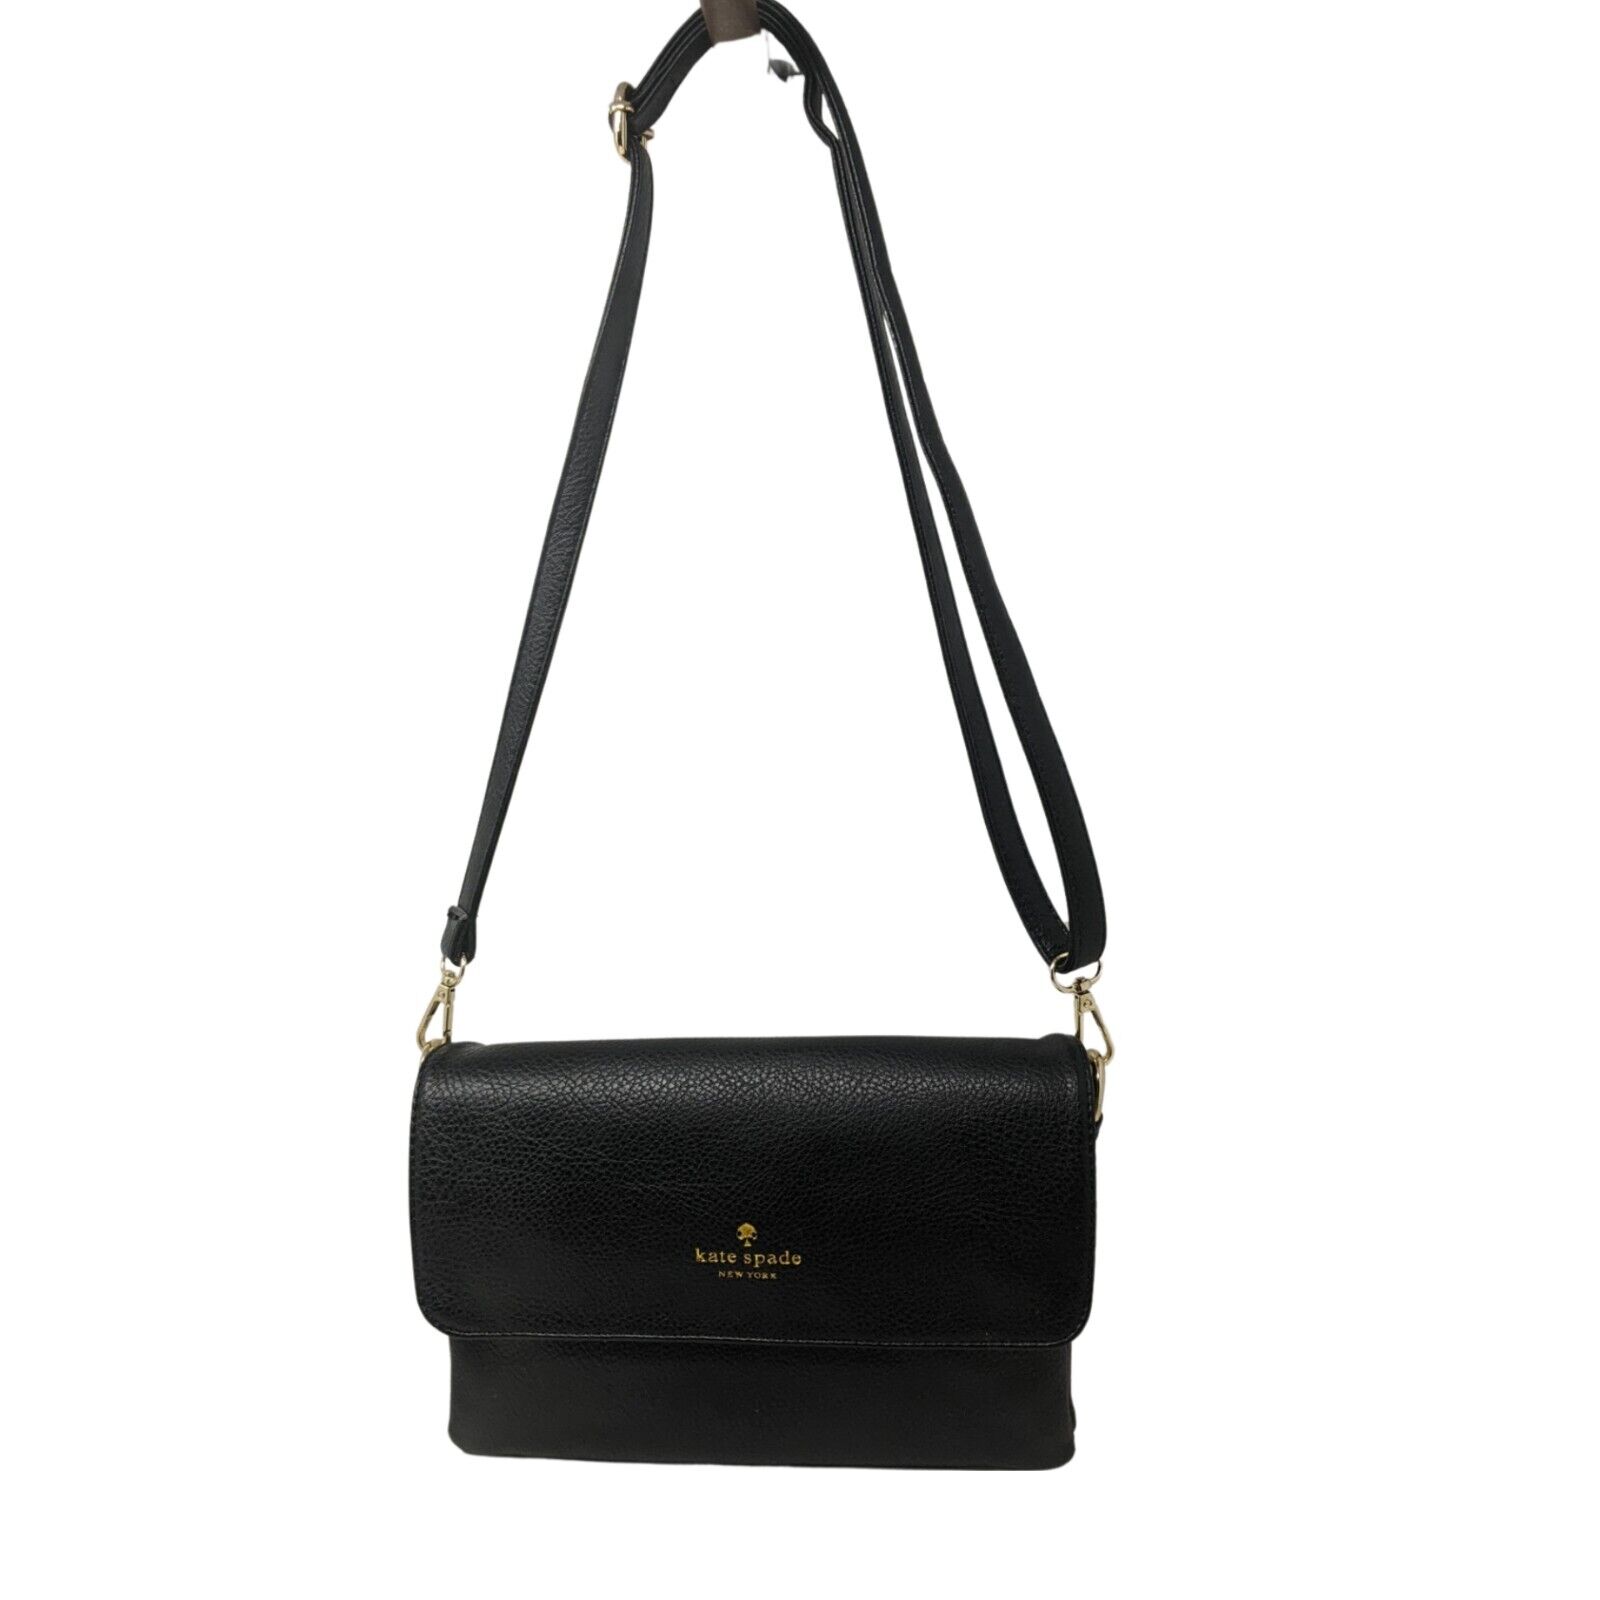 Vintage Kate Spade Black Leather Crossbody Bag - image 2